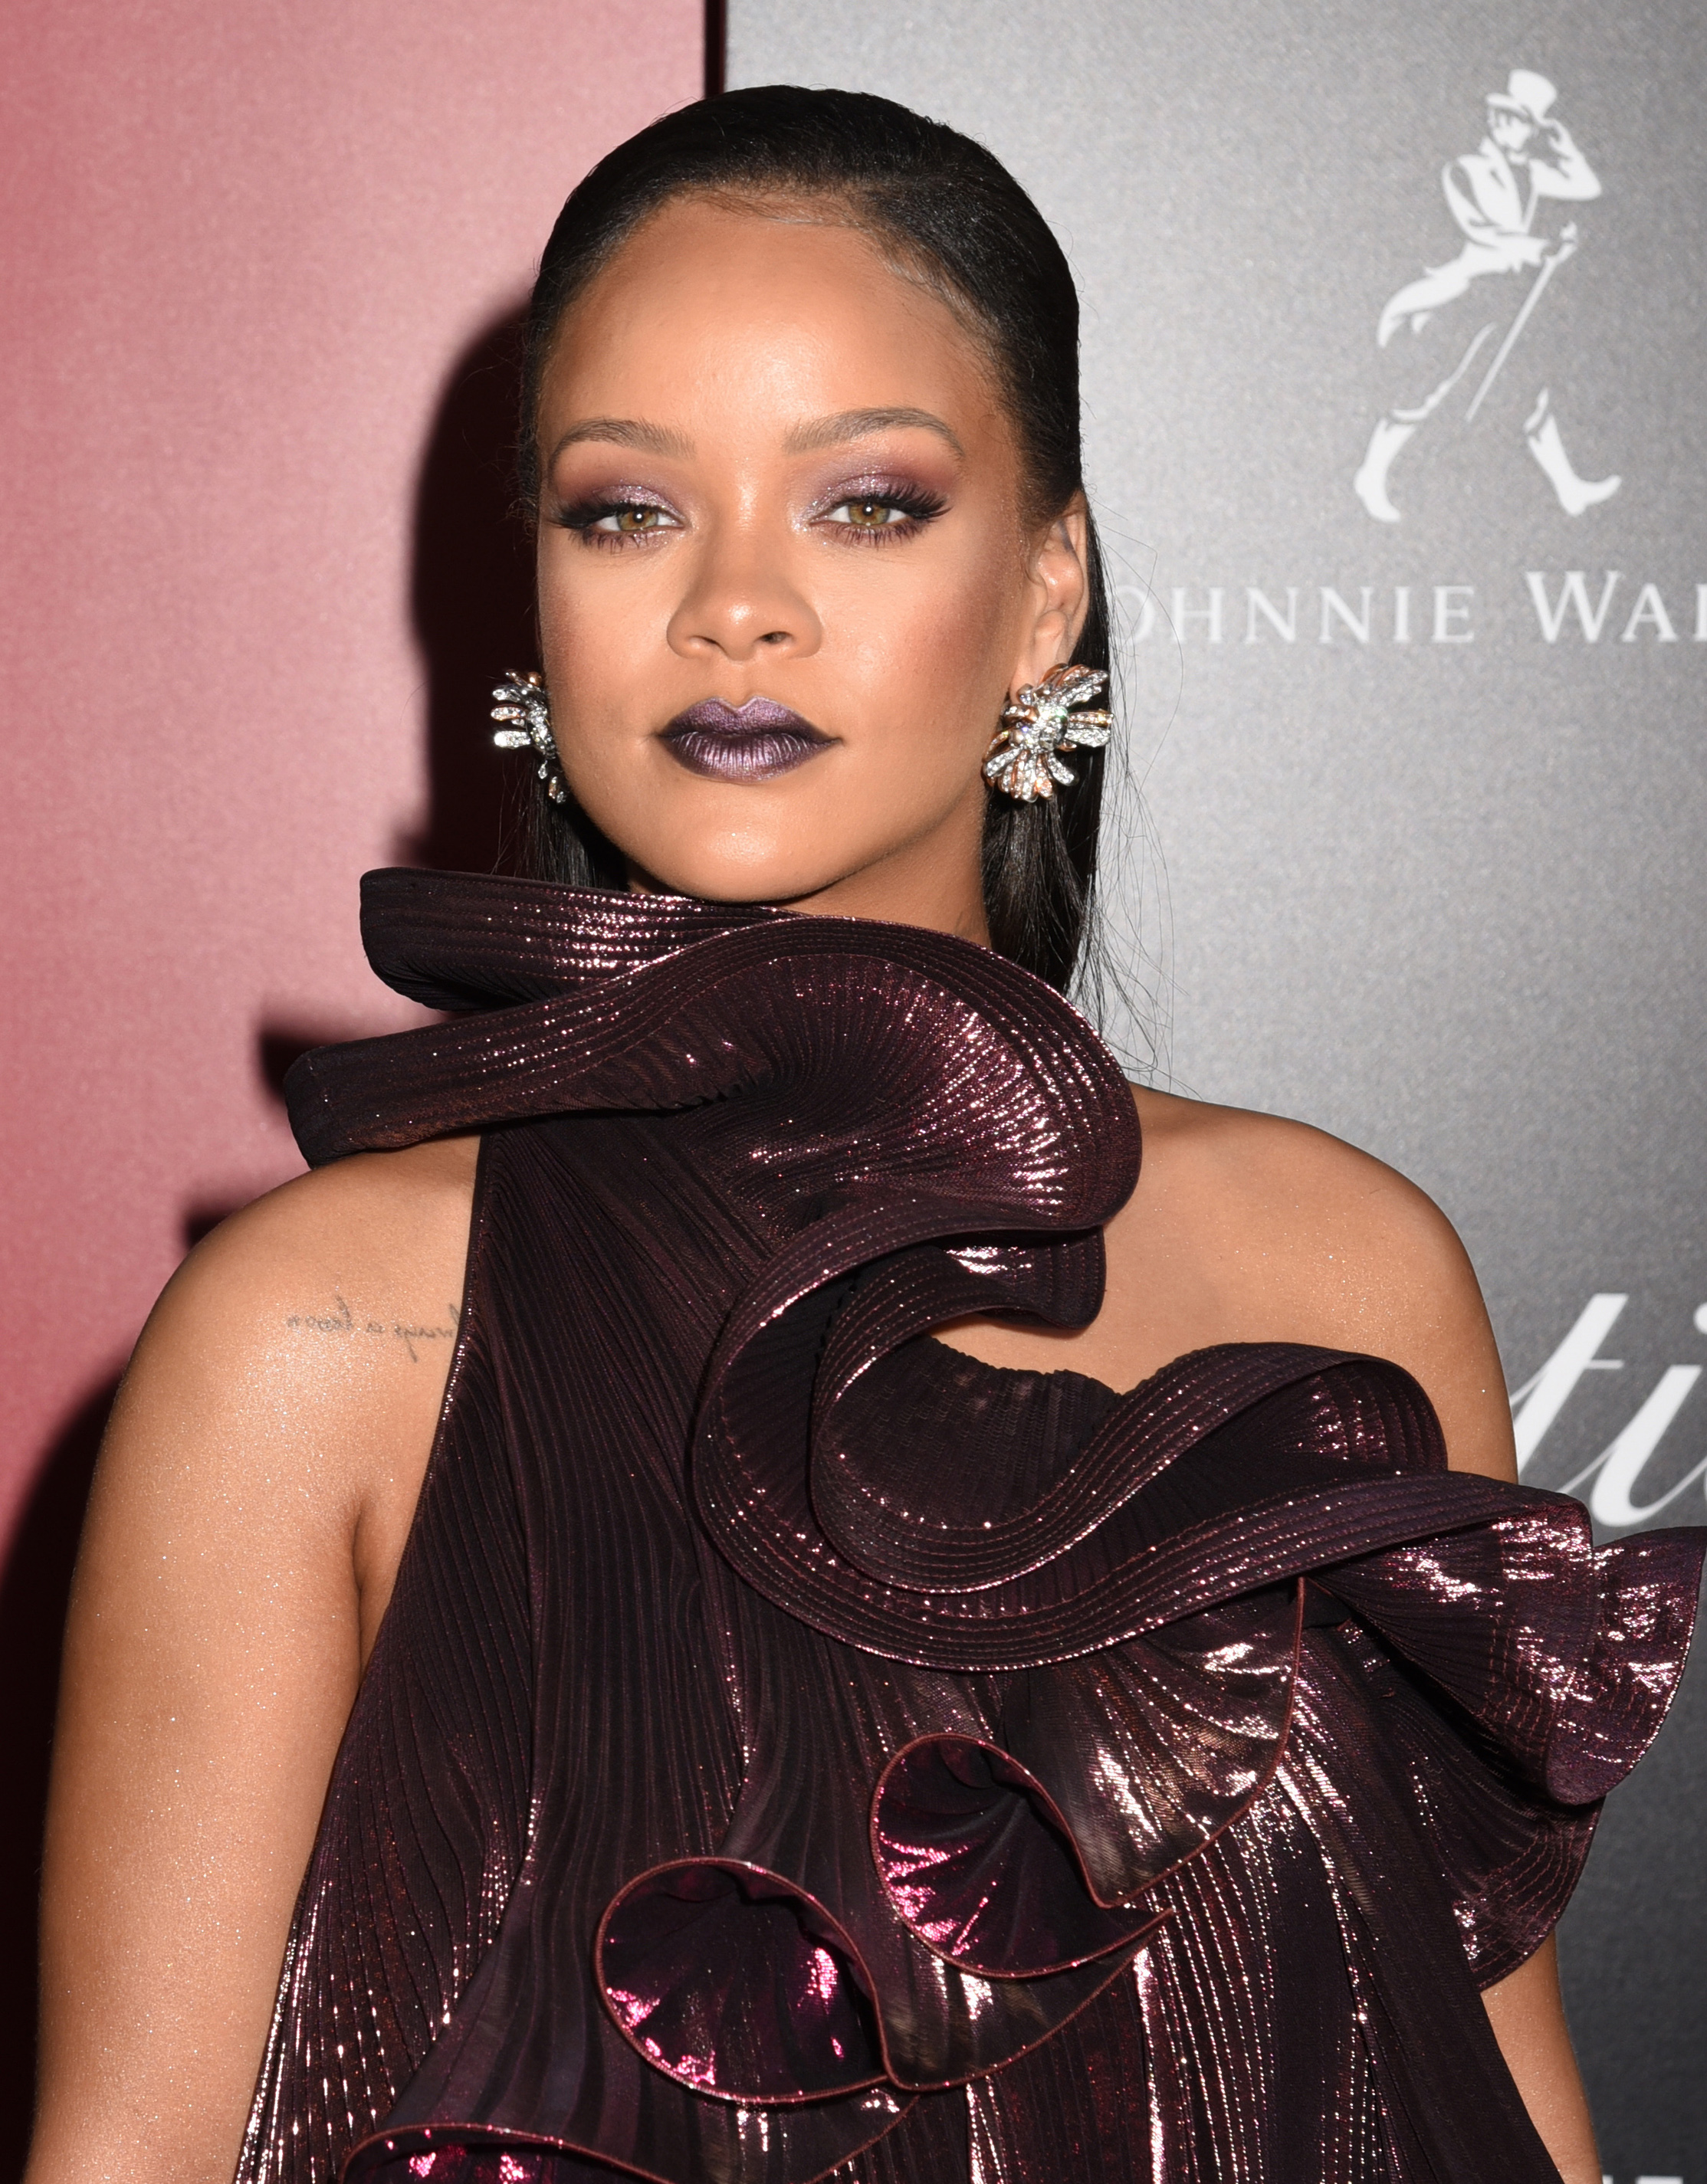 Η queen of the universe Rihanna “έσωσε” την makeup artist της που έχασε τις βαλίτσες της!